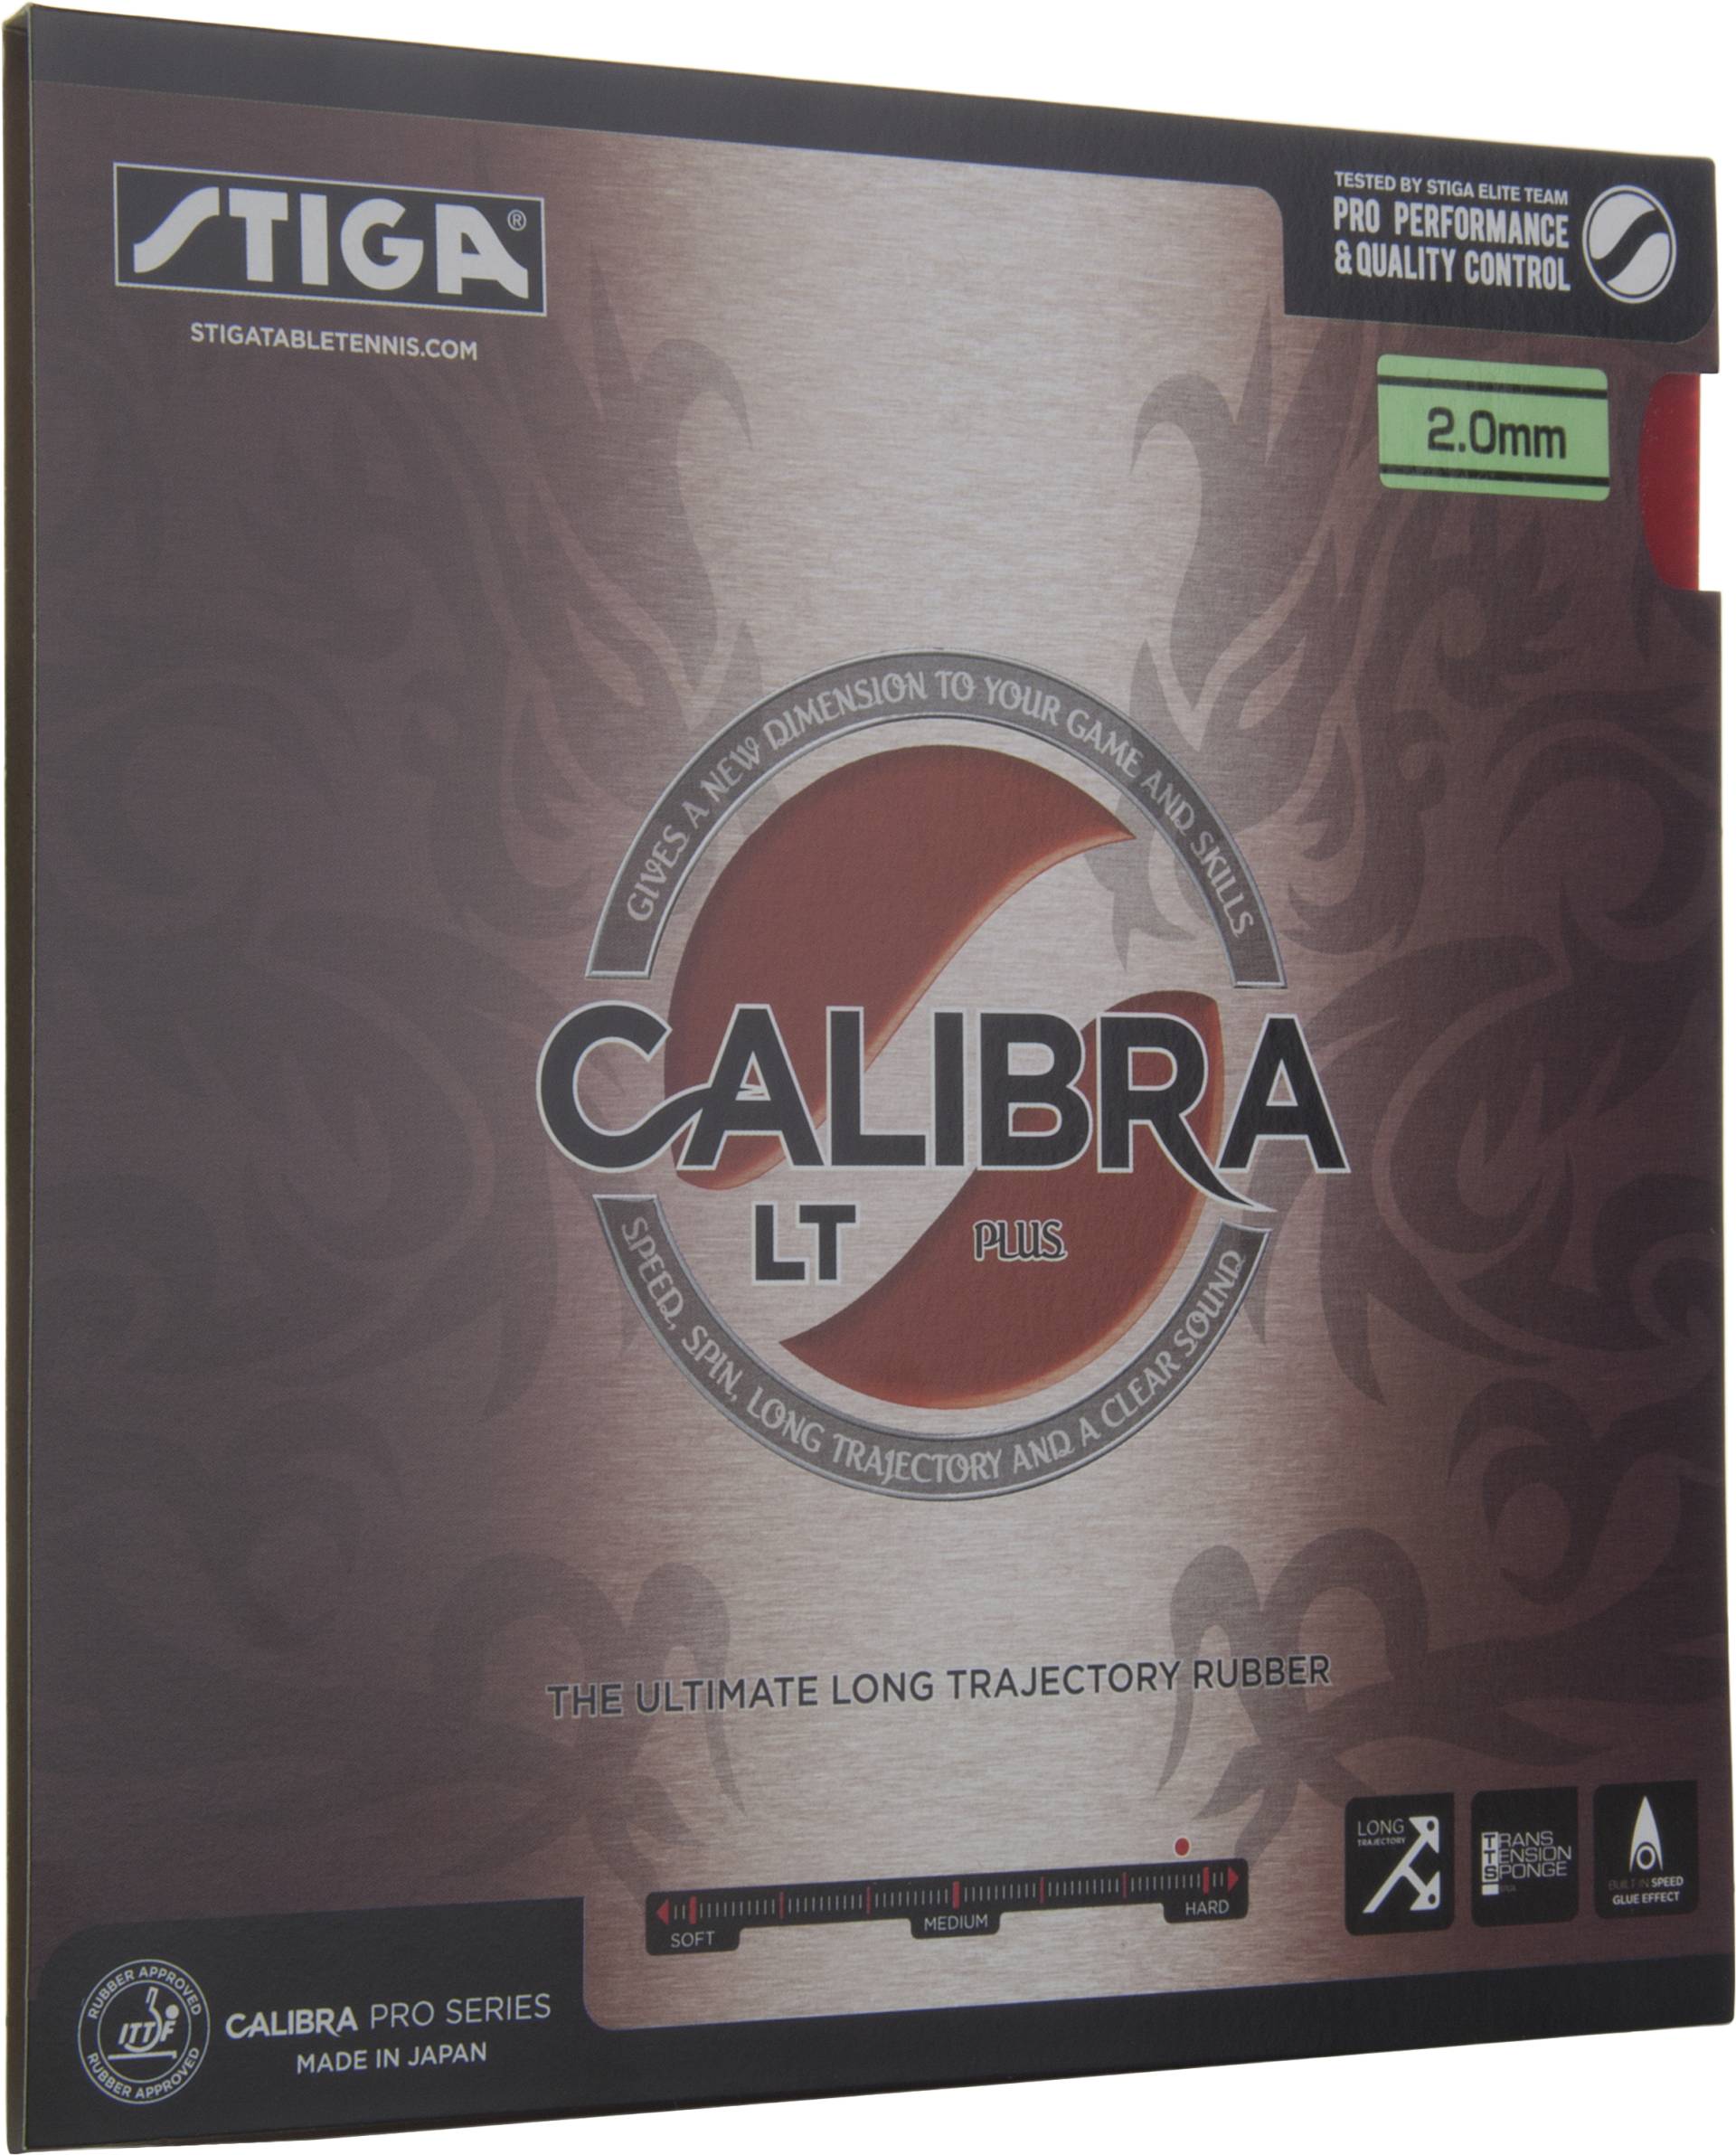 Stiga Calibra LT Plus - Tischtennis Belag von Stiga